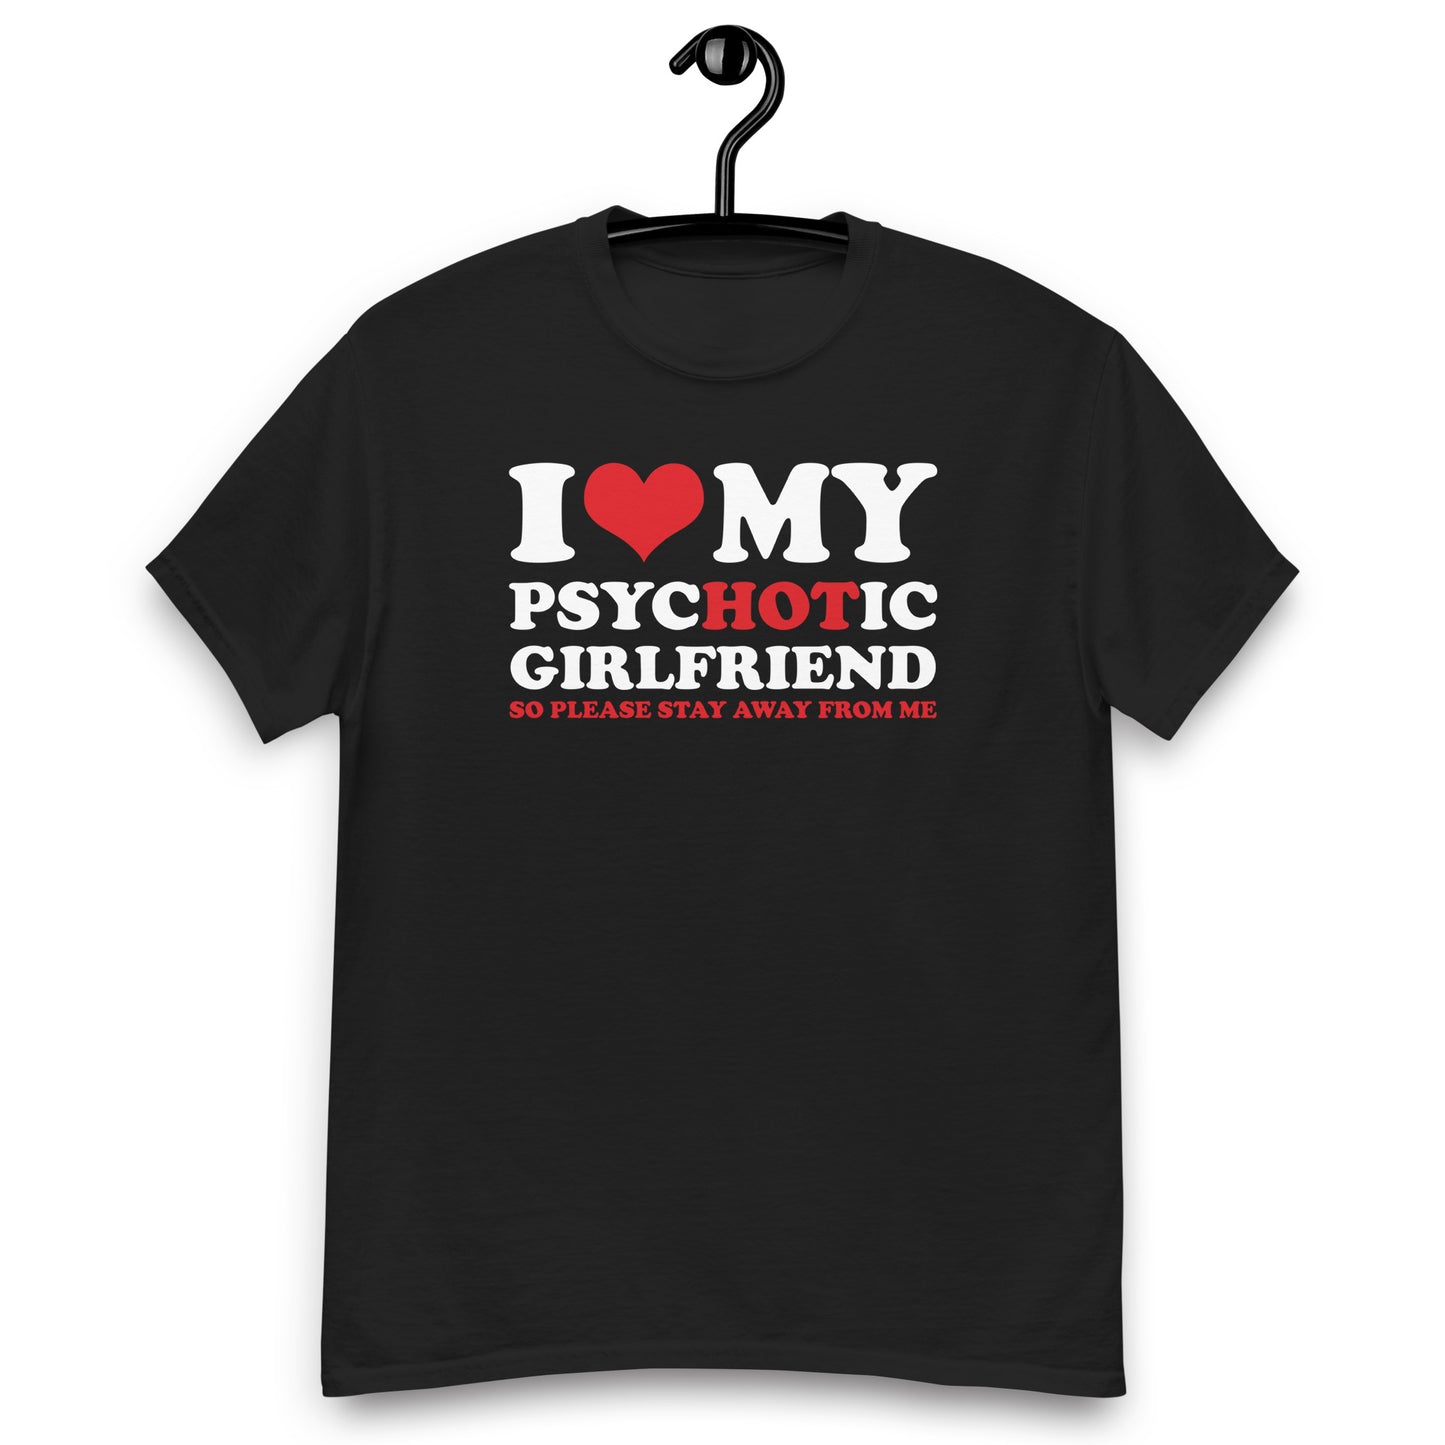 Hot Psychotic Girlfriend" T-Shirt, Boyfriend shirt